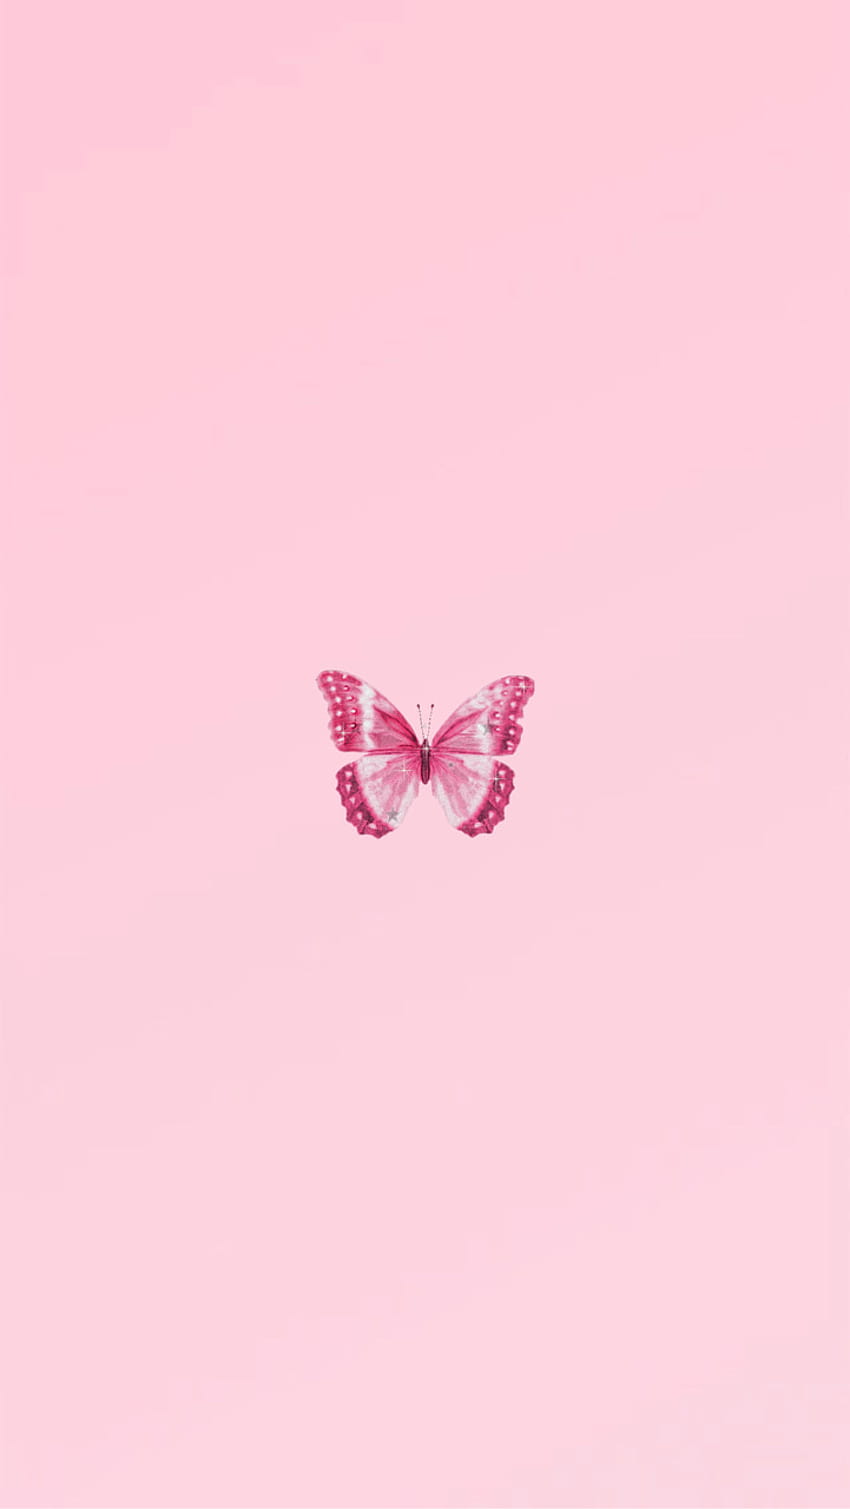 Khám phá thế giới đầy màu hồng tươi tắn và độc đáo của Tumblr. Xem những hình ảnh mang phong cách Pink Aesthetic sẽ khiến bạn thấy hài lòng và đầy cảm hứng.